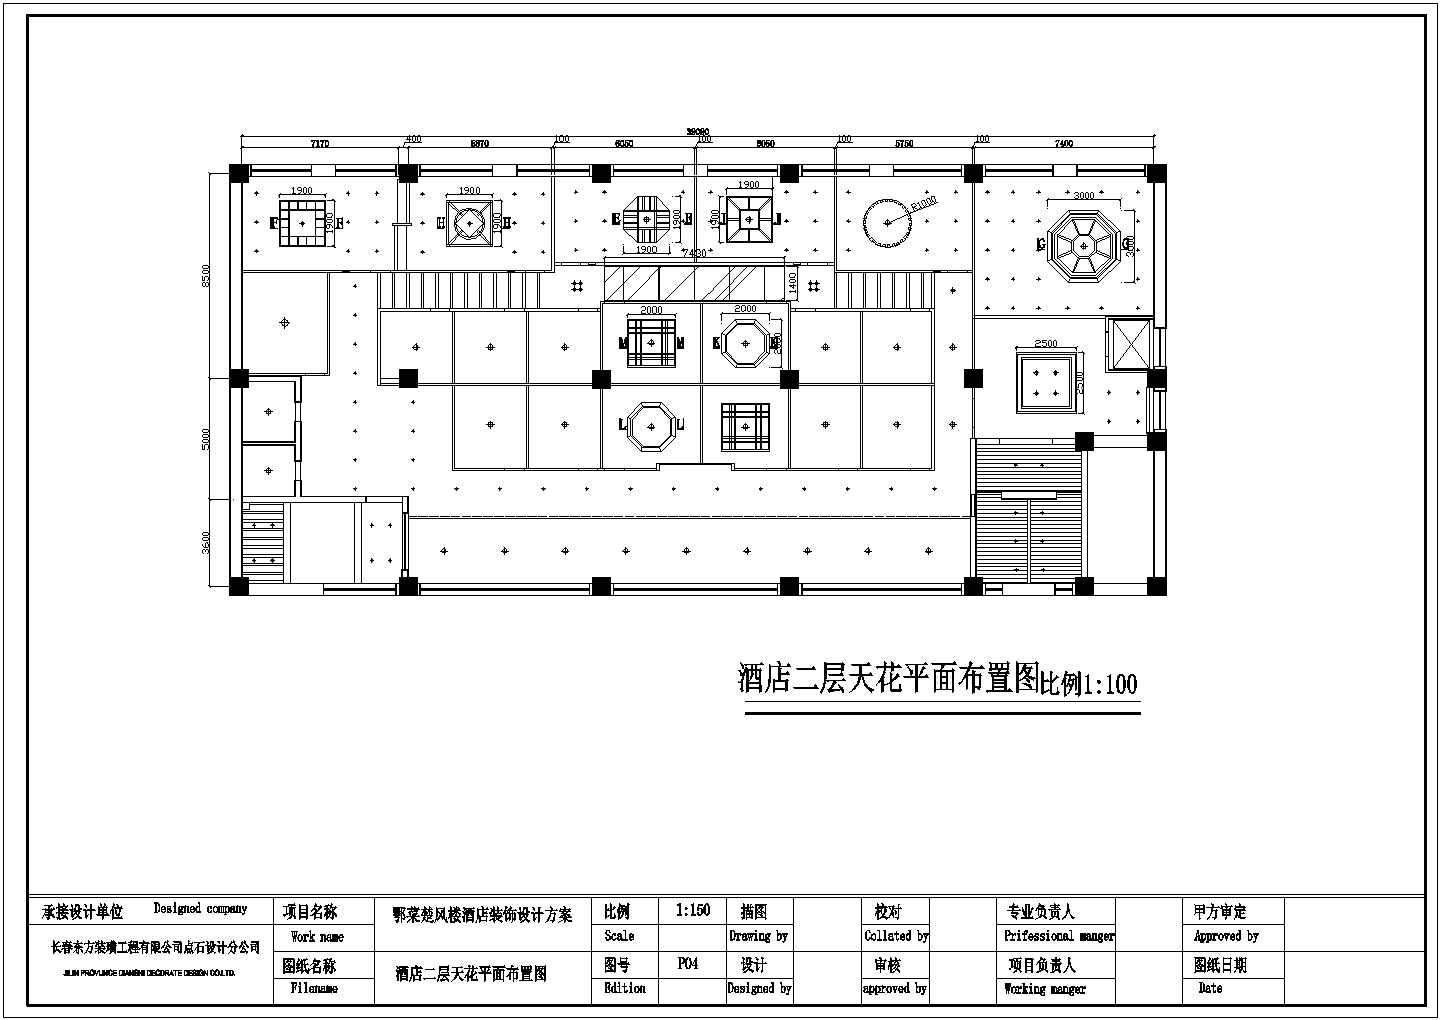 一套酒店设计施工方案CAD图